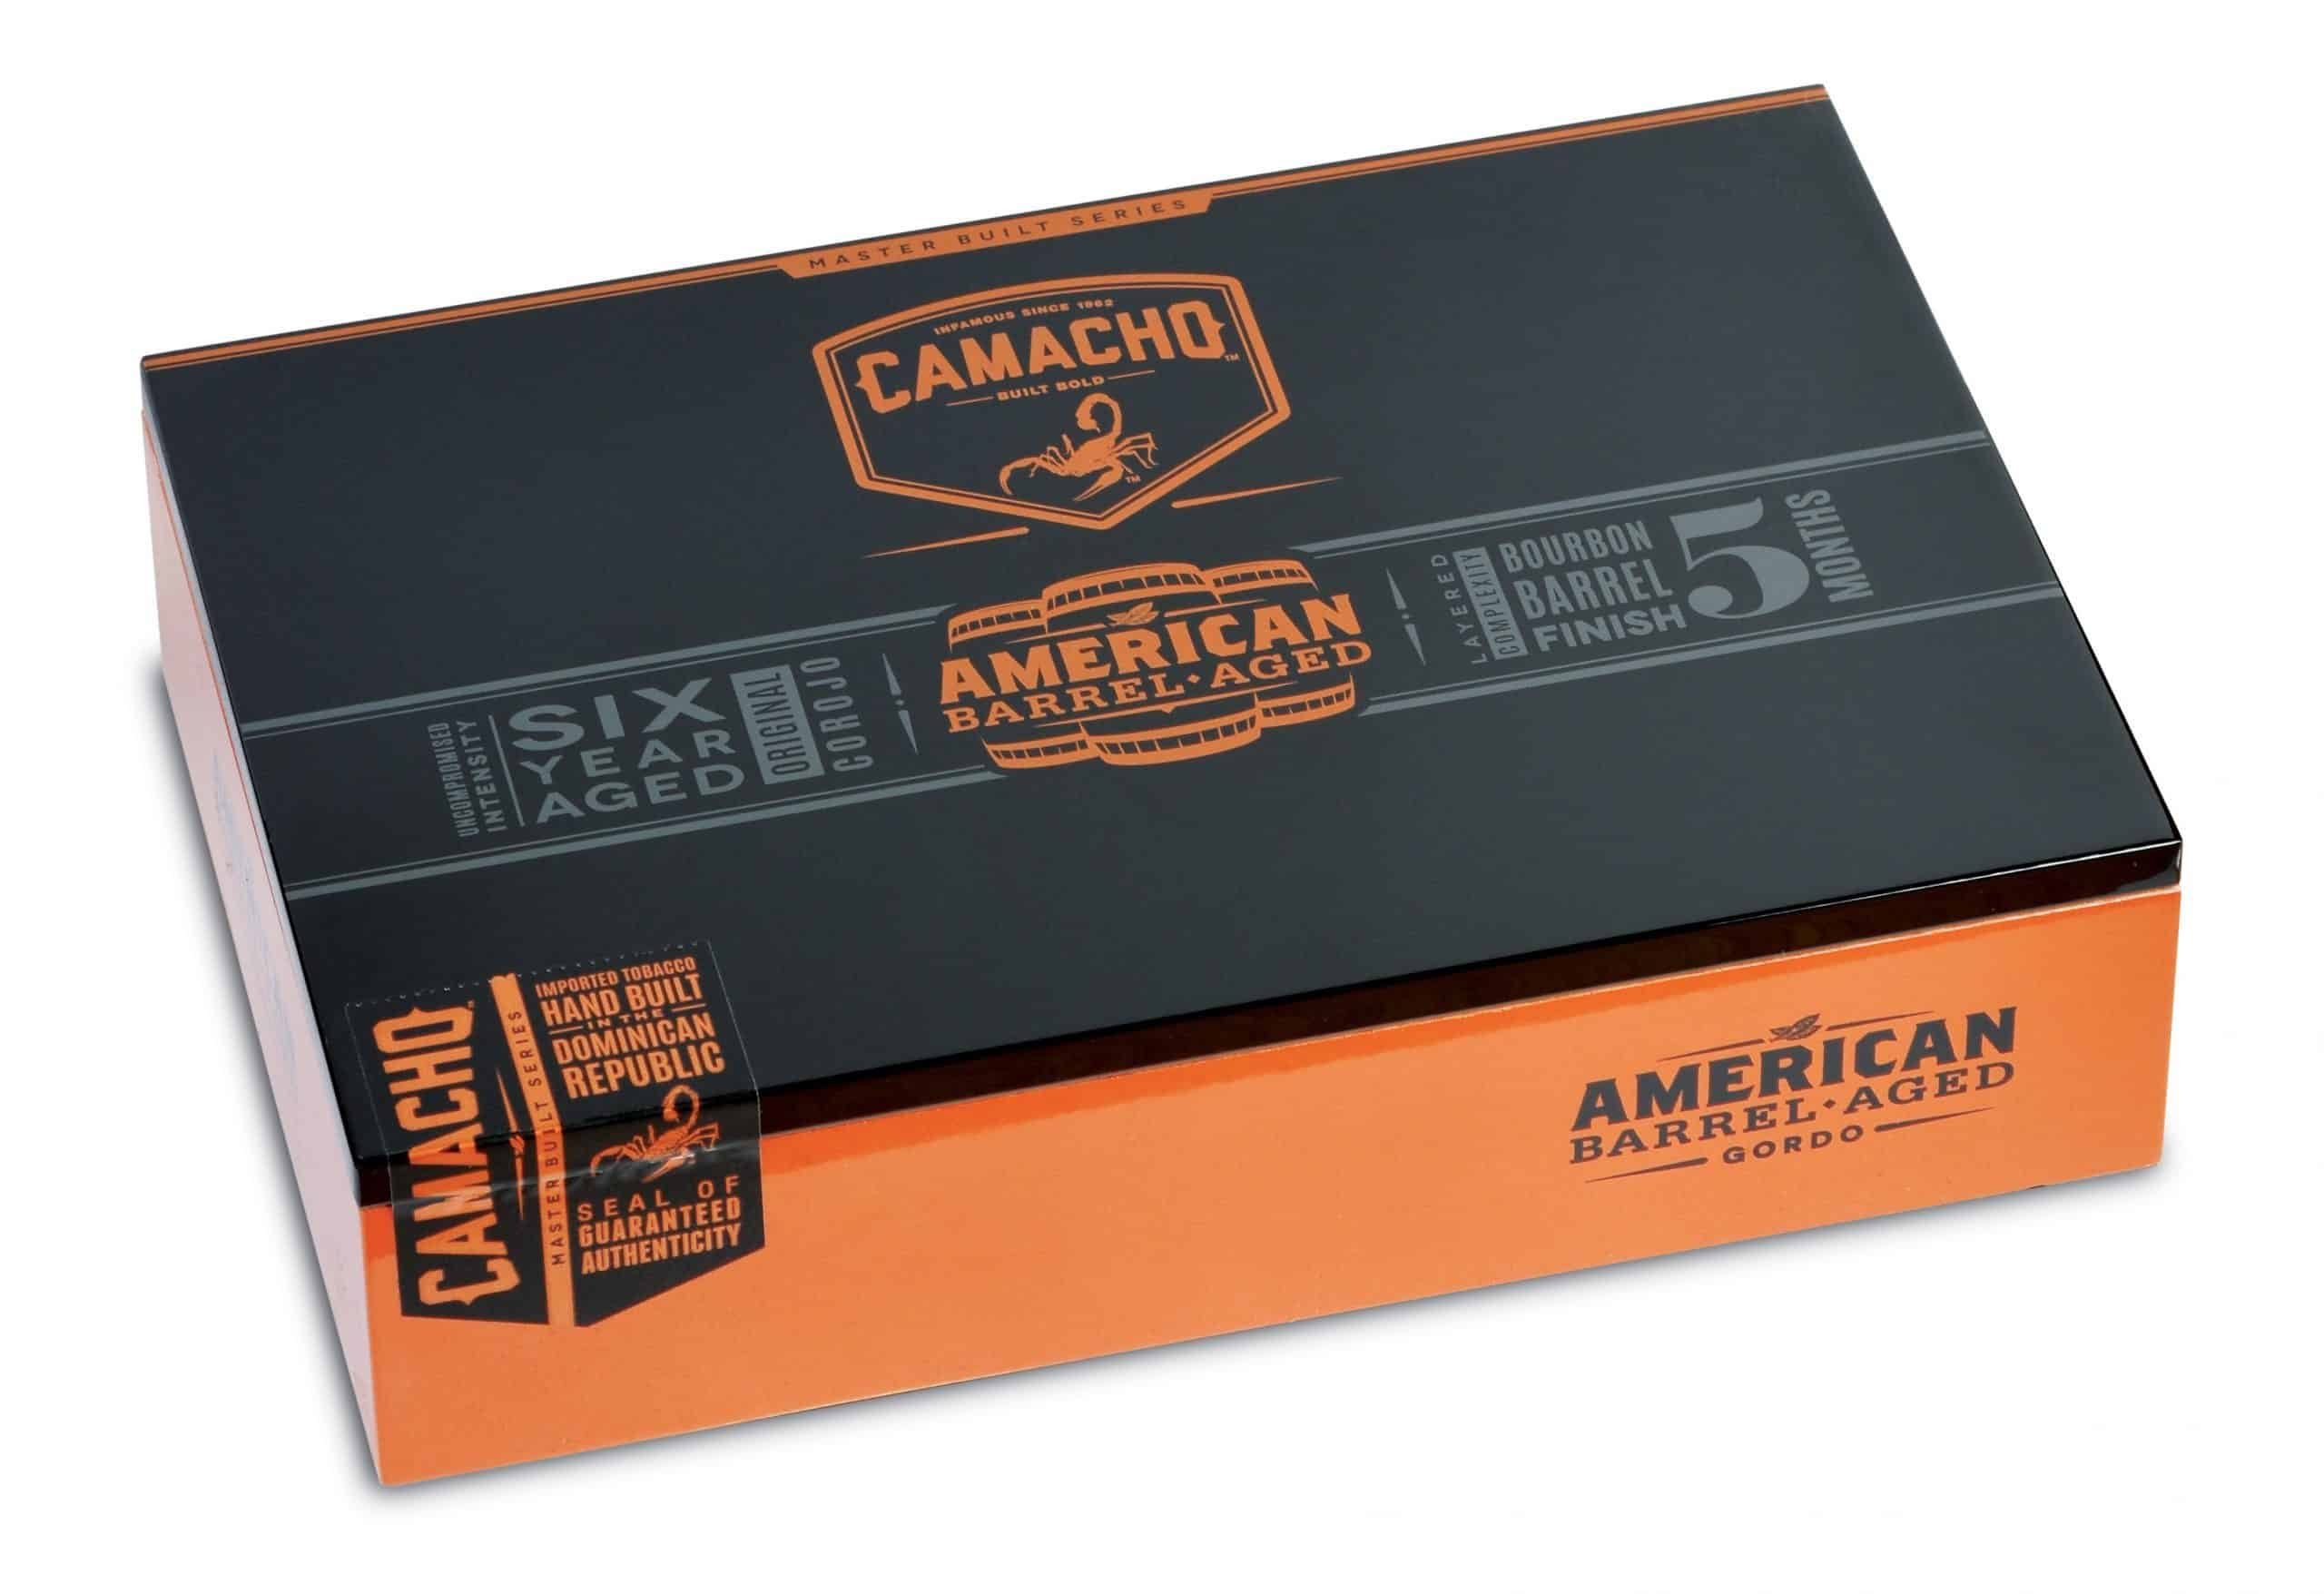 camacho american barrel aged gordo box closed